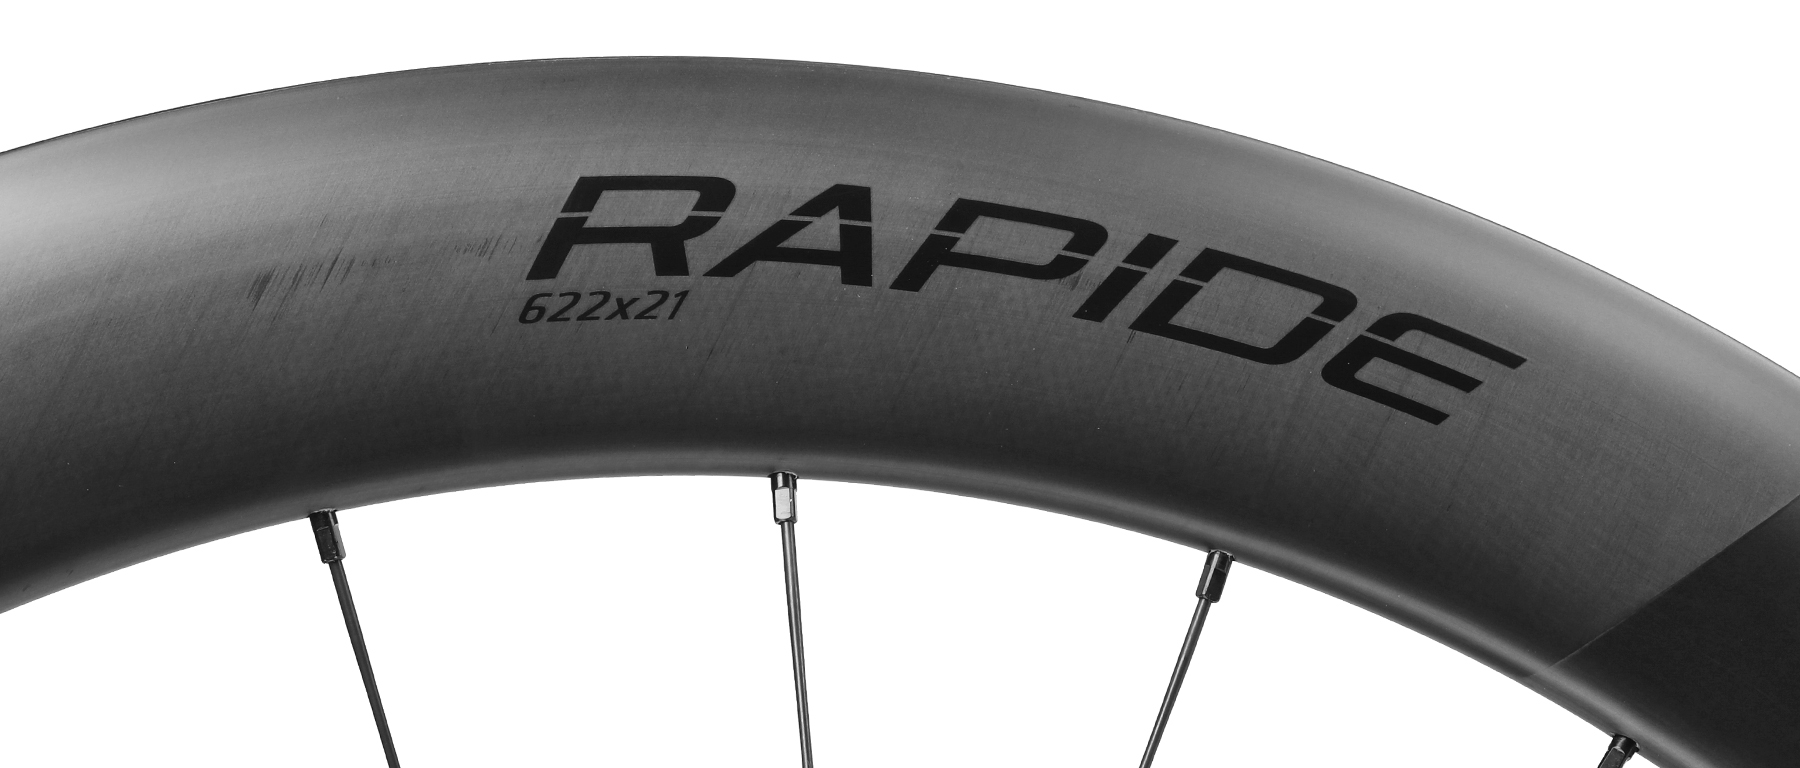 Roval Rapide CL II Rear Wheel